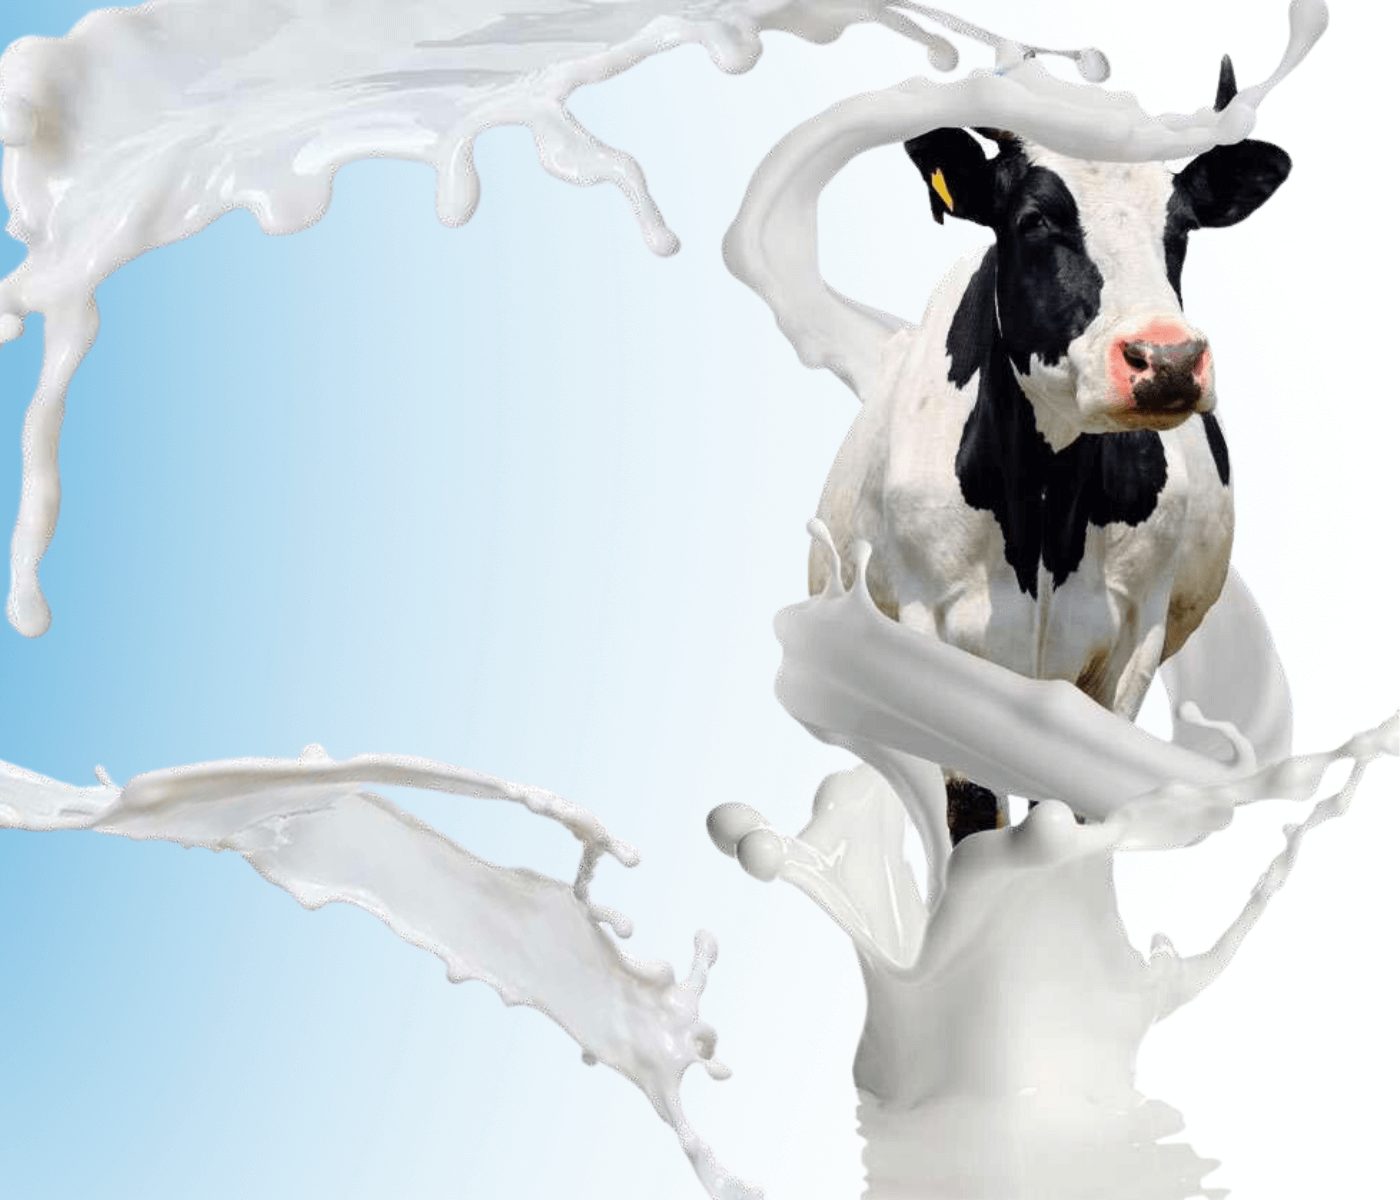 Dietas frías para reducir el estrés térmico en ganado bovino lechero